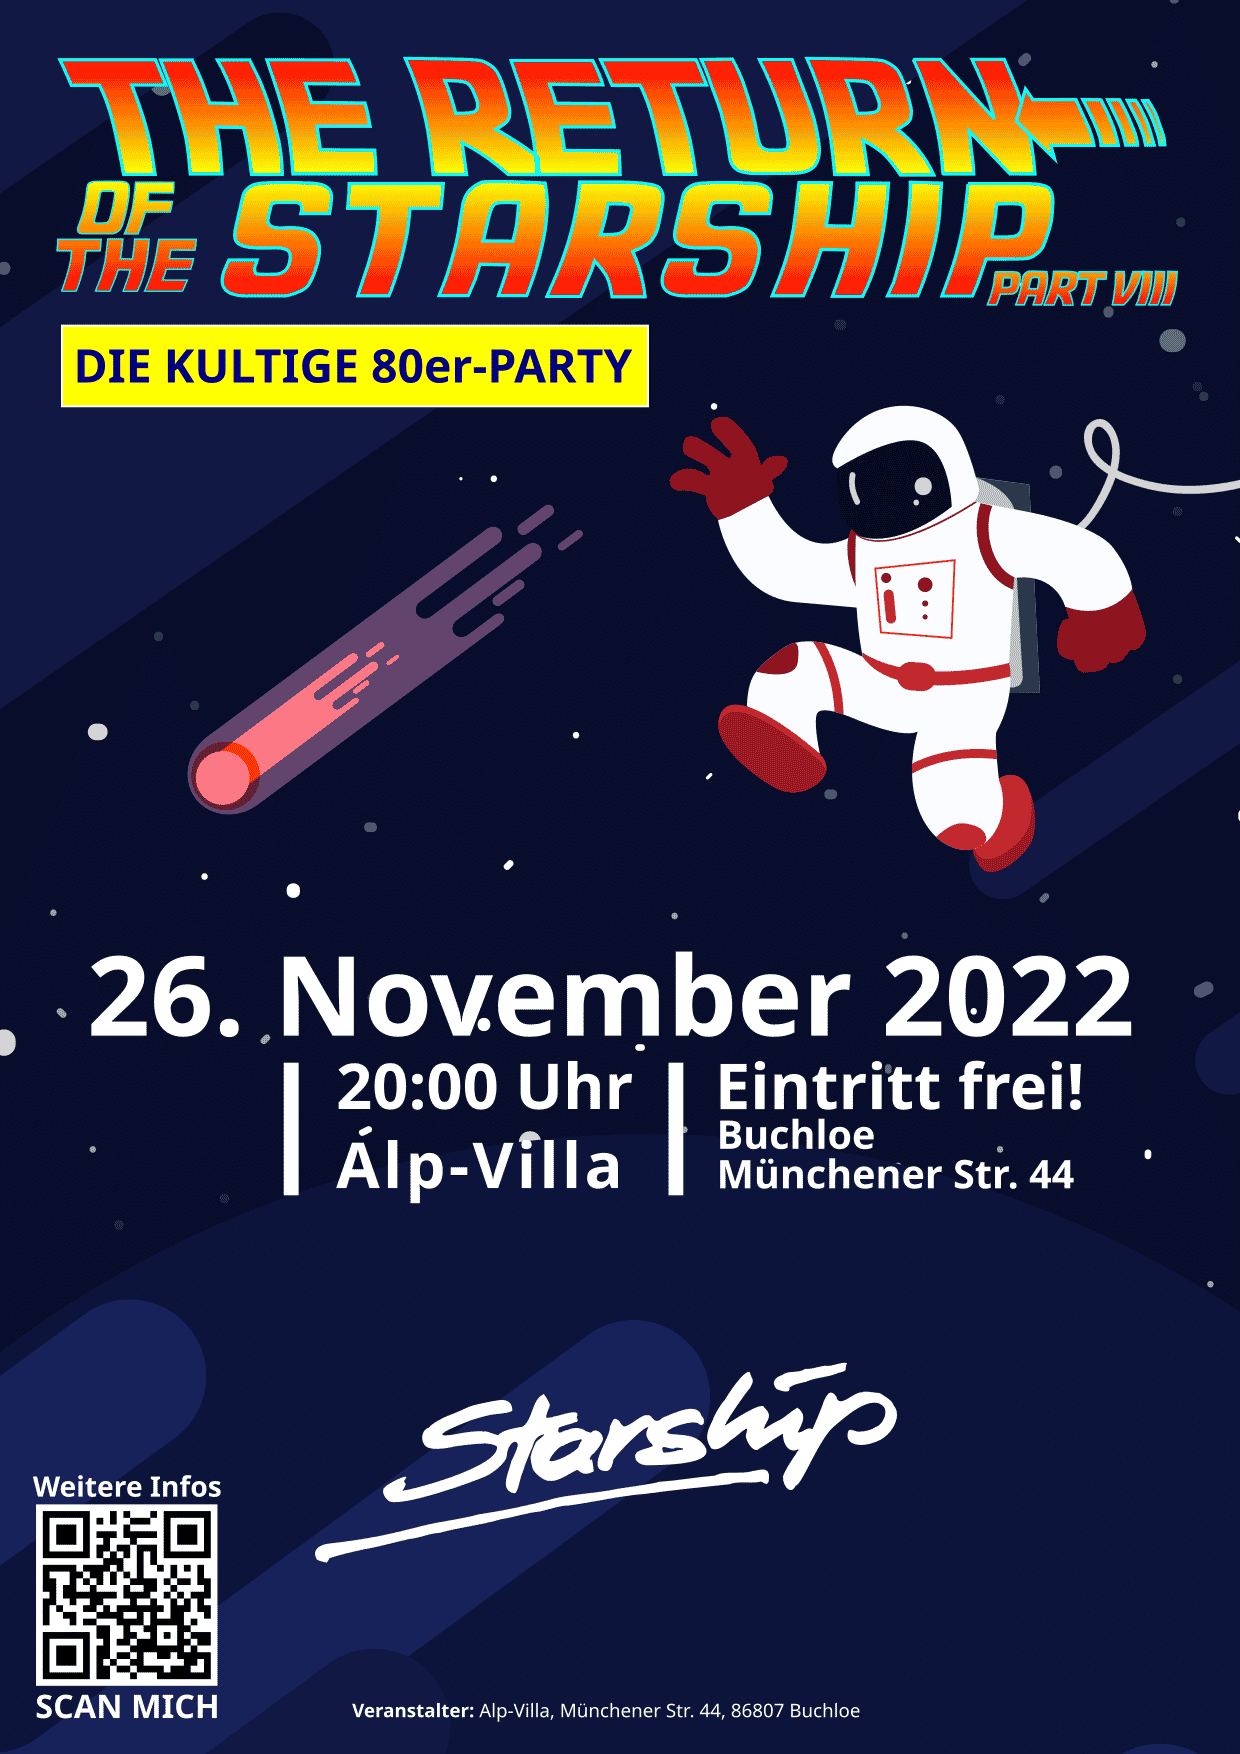 Veranstaltungshinweis auf die 80er-Party "The Return of the Starship" am Samstag, 26. November 2022 in der Alp-Villa in Buchloe